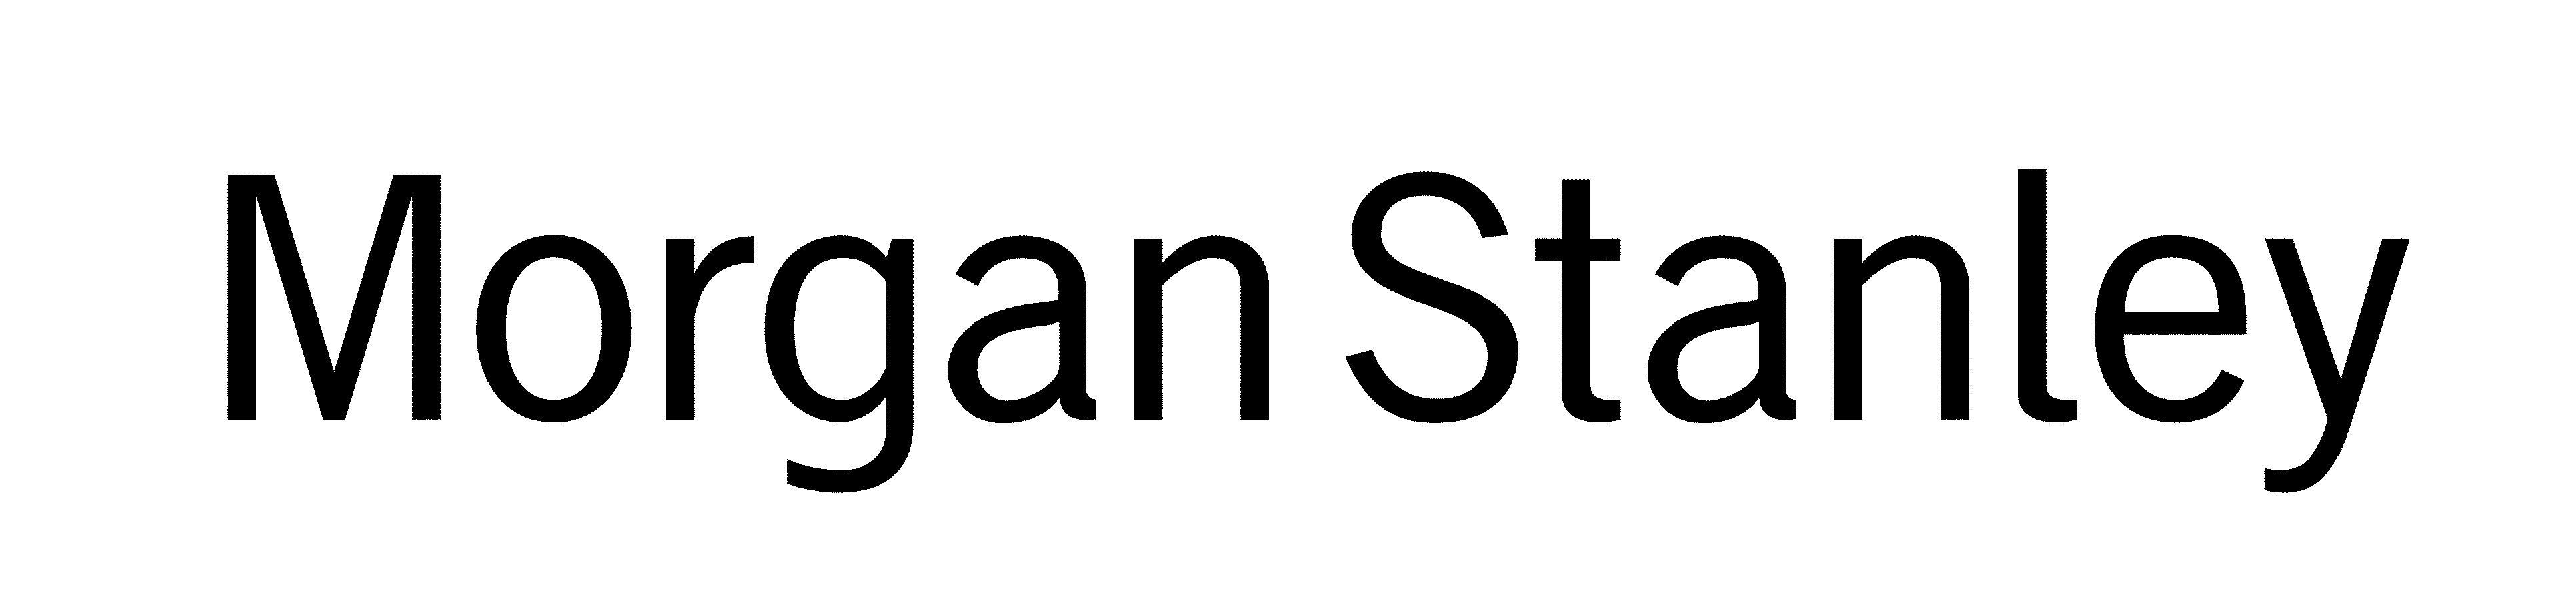 Morgan Stanley Logo - Morgan Stanley Helsinki Networking Drinks - KY Finance